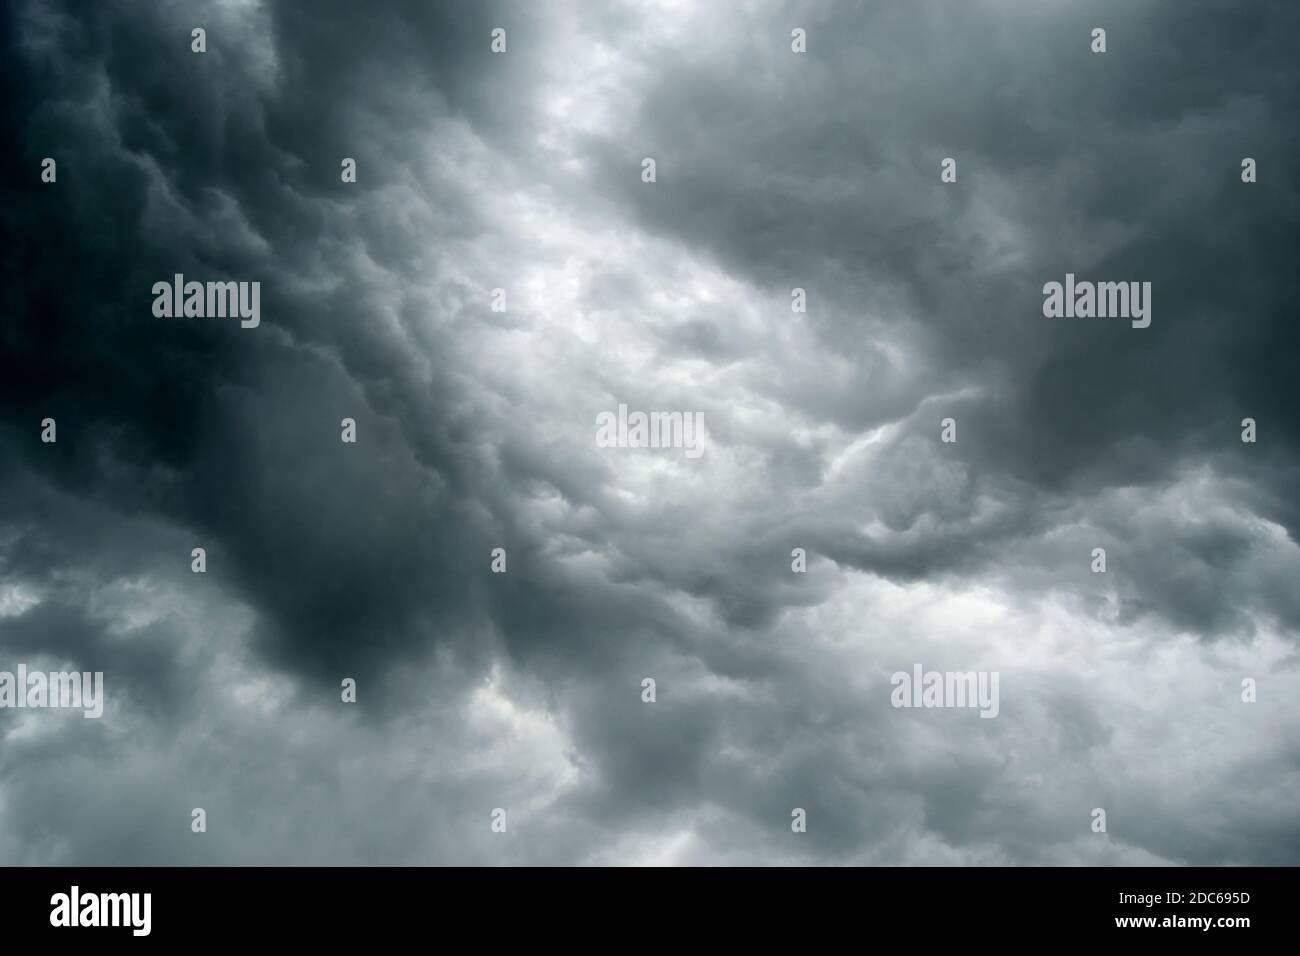 Pioggia drammatica nuvole al cielo scuro.cielo scuro e nuvole nere, drammatiche nuvole tempesta prima della pioggia. Foto Stock